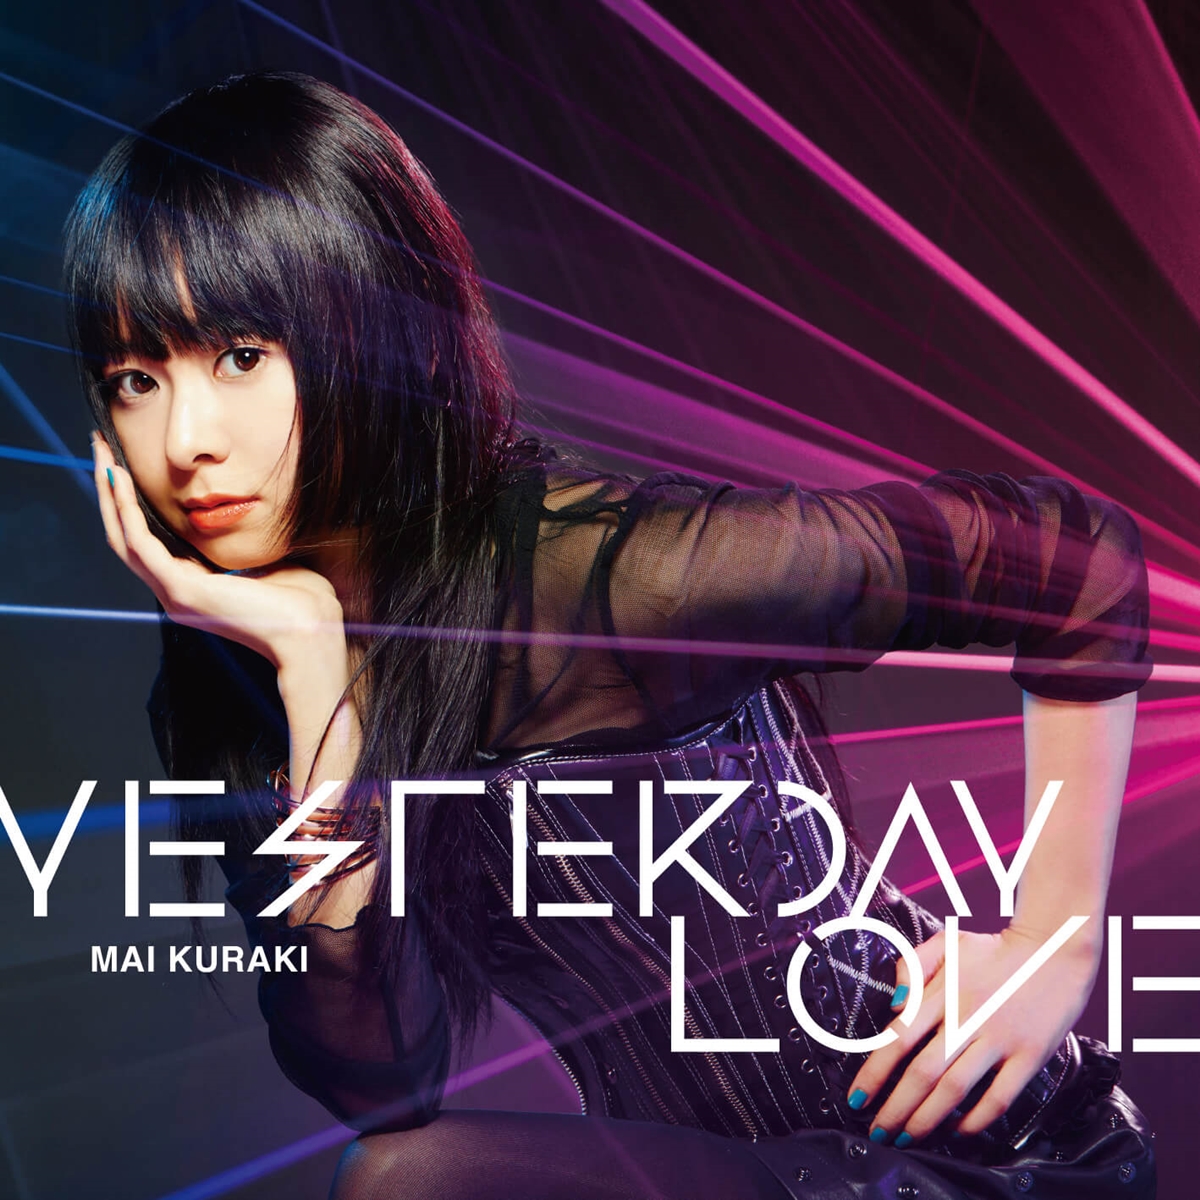 Cover art for『Mai Kuraki - YESTERDAY LOVE』from the release『YESTERDAY LOVE』